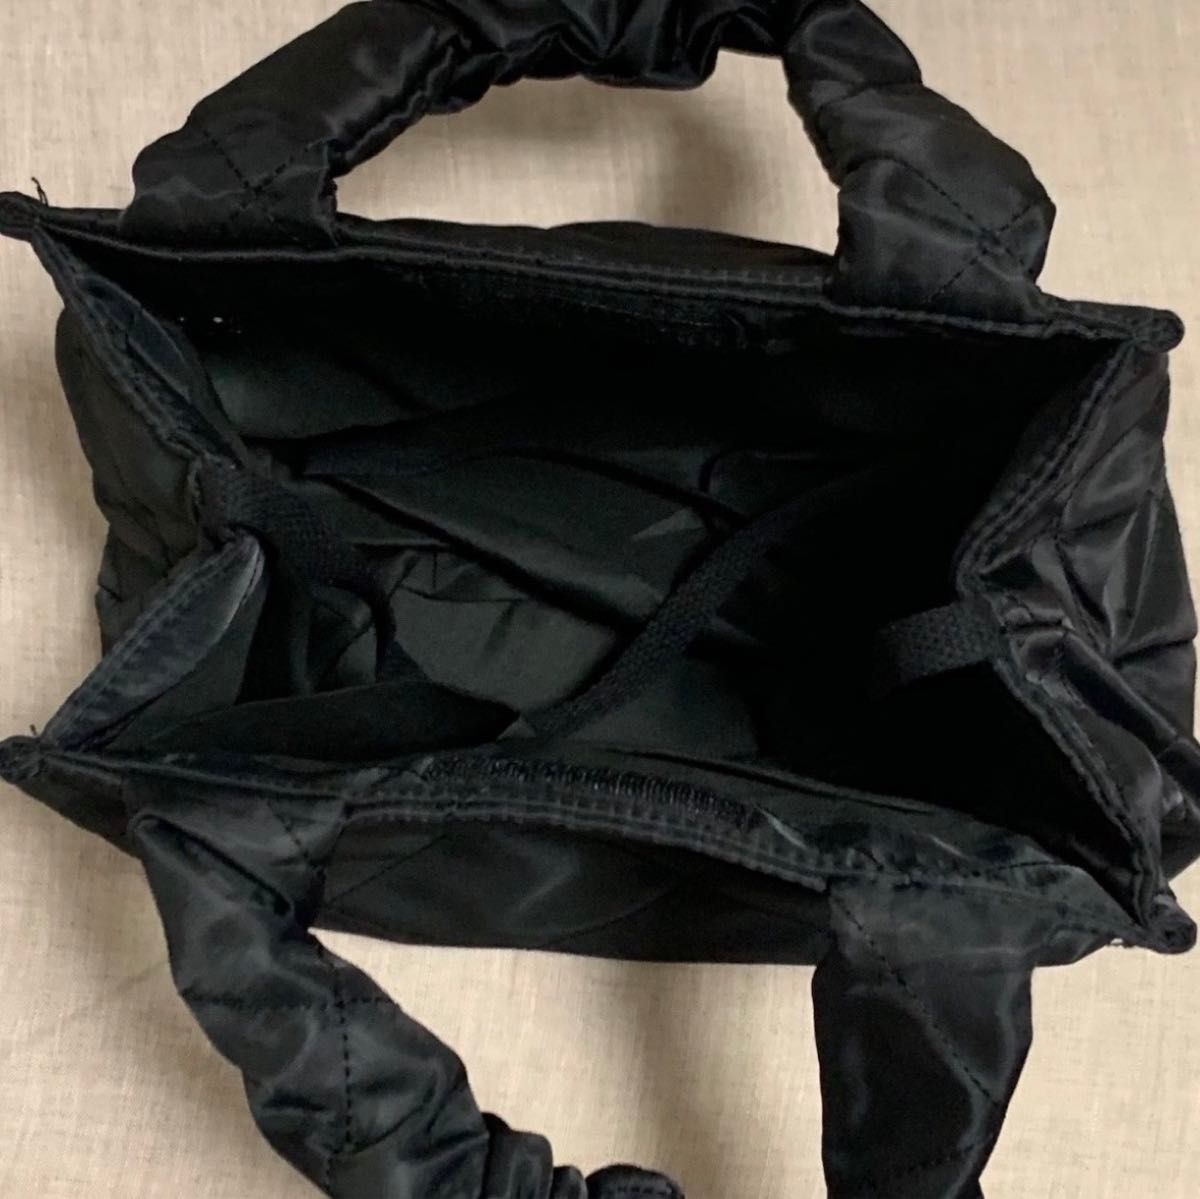 キルティング ミニトートバッグ マチあり レディース 鞄 黒 人気 綺麗 ギャザーハンドル ギャザーバッグ 新品未使用 旅行